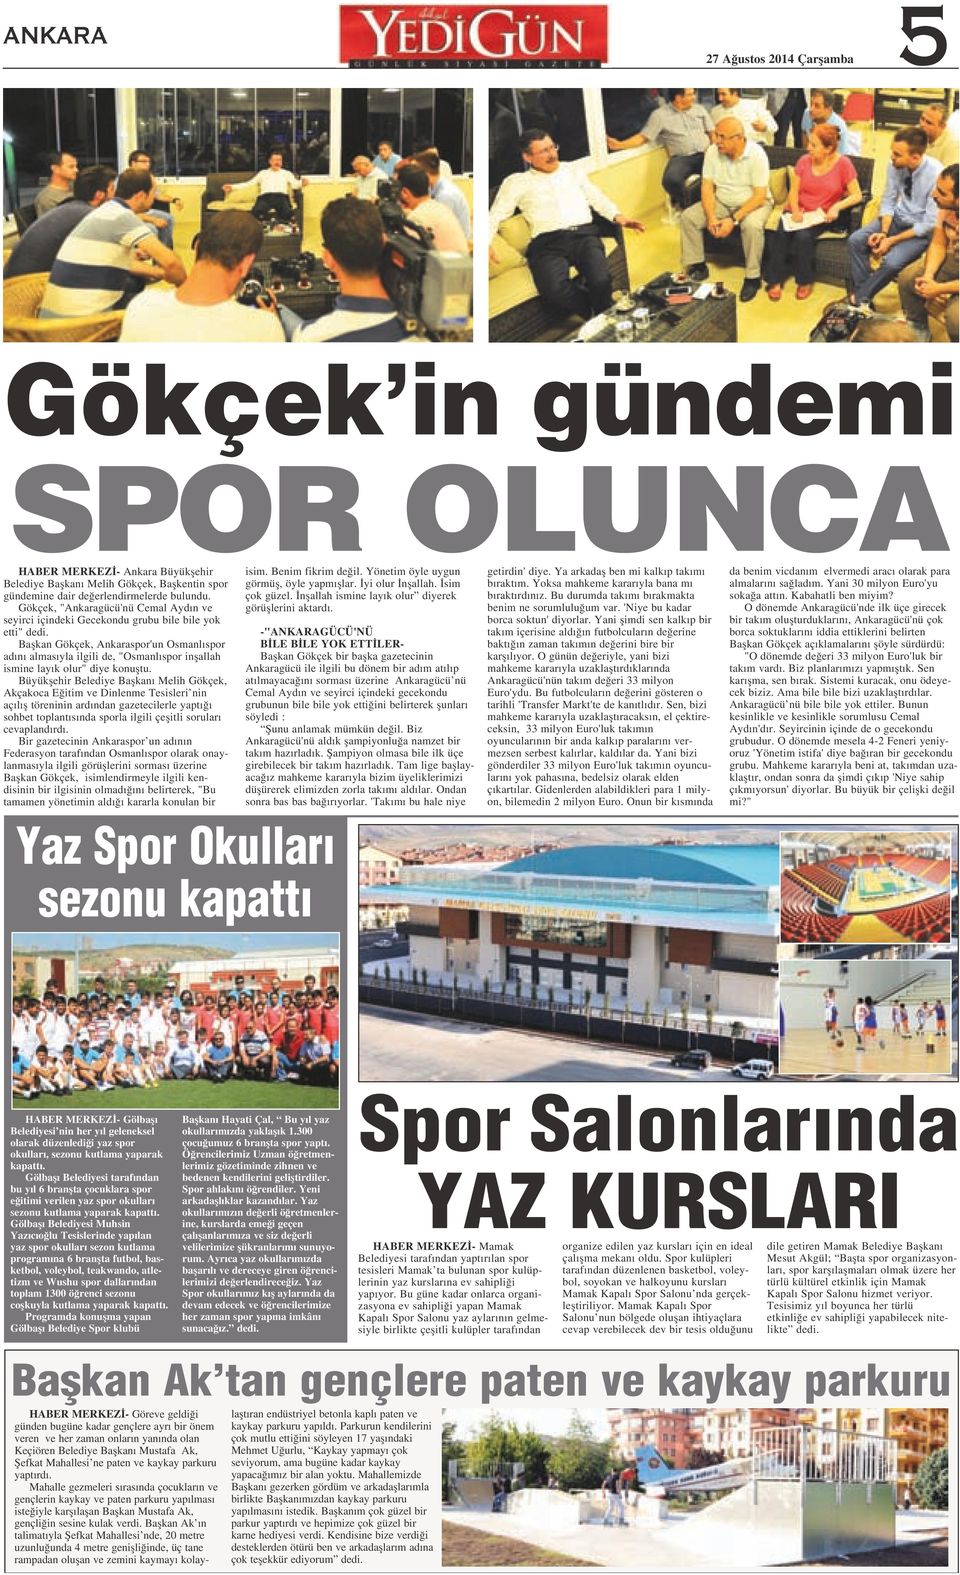 Baflkan Gökçek, Ankaraspor'un Osmanl spor ad n almas yla ilgili de, "Osmanl spor inflallah ismine lay k olur" diye konufltu.